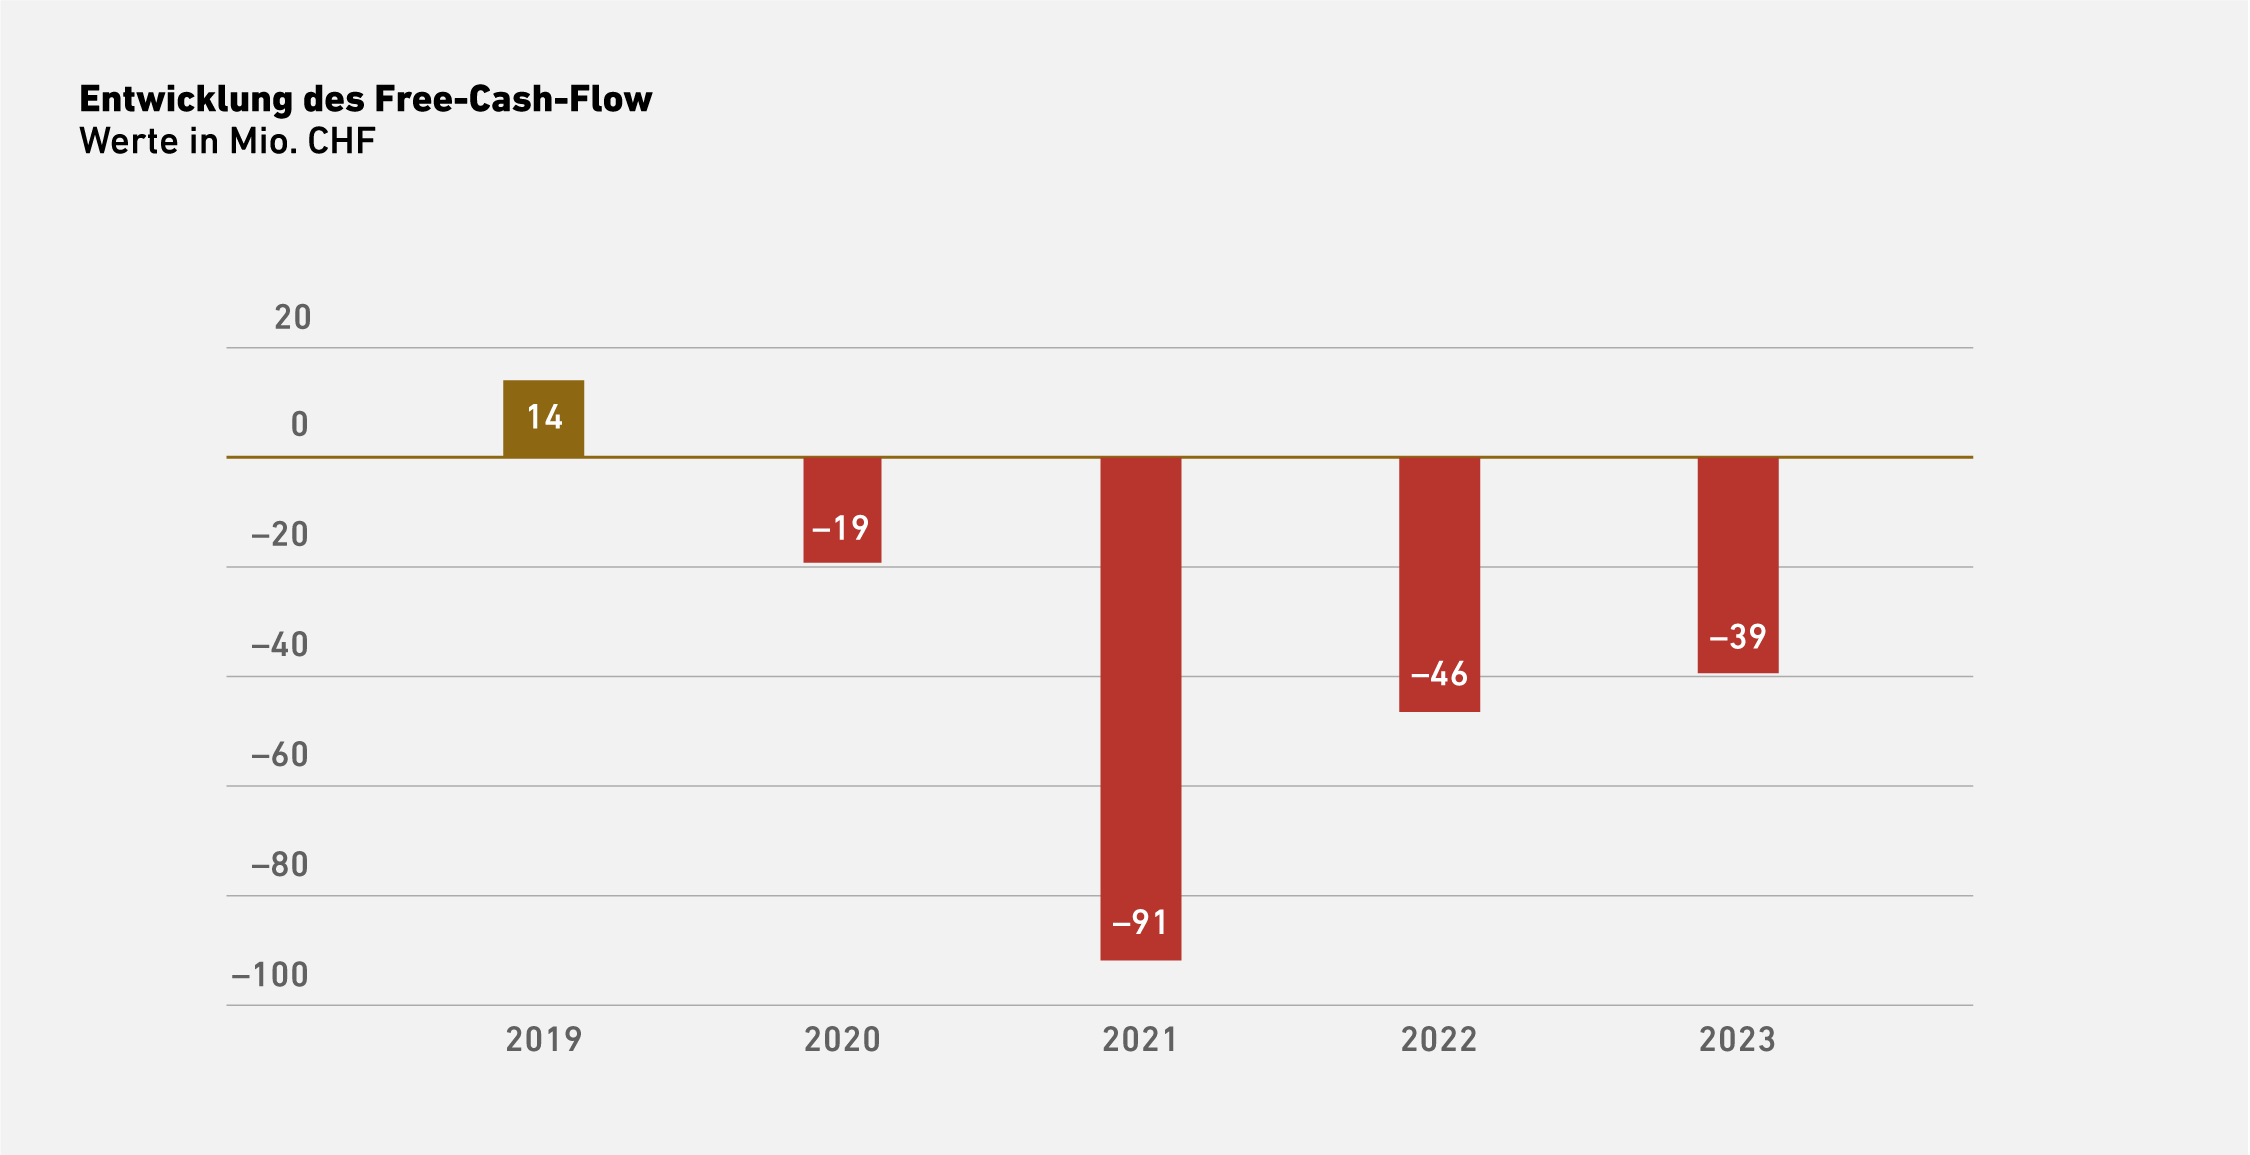 Vergrösserte Ansicht: Entwicklung des Free-Cash-Flow (Werte in Mio. CHF). 2019: 14; 2020: -19; 2021: -91; 2022: -46; 2023: -39